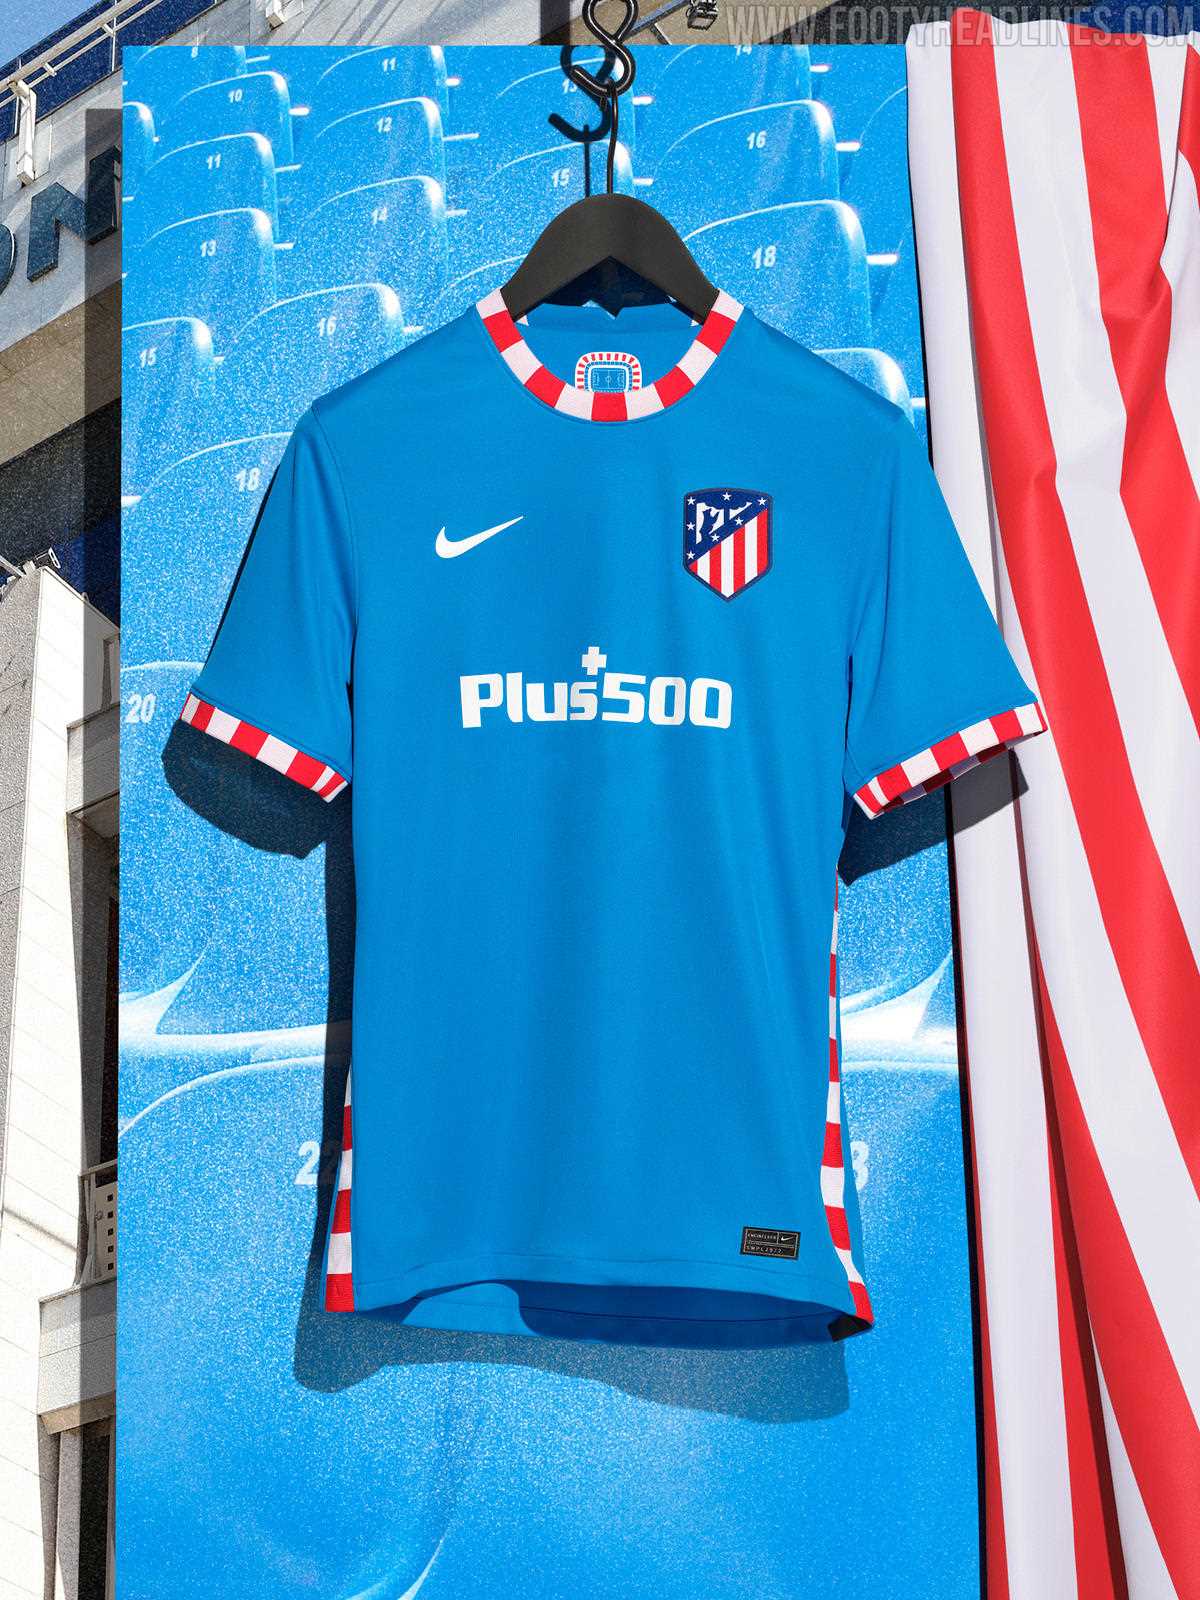 Nike San Antonio FC 2021 Third Kit Released - Footy Headlines